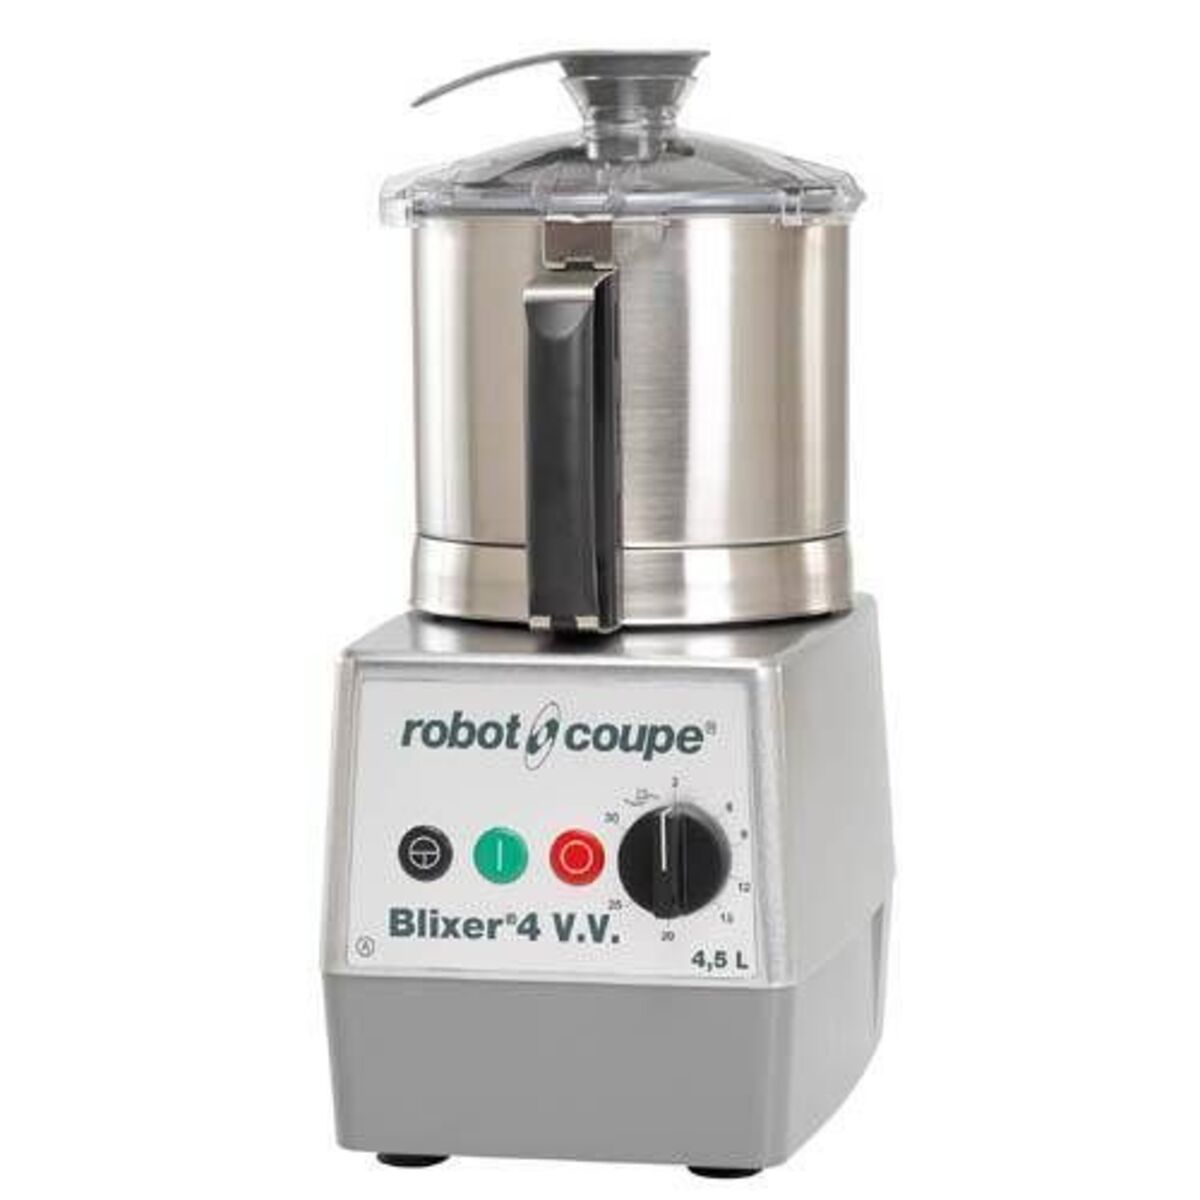 Blixer 4 vv robot coupe monophasé 230/50/1